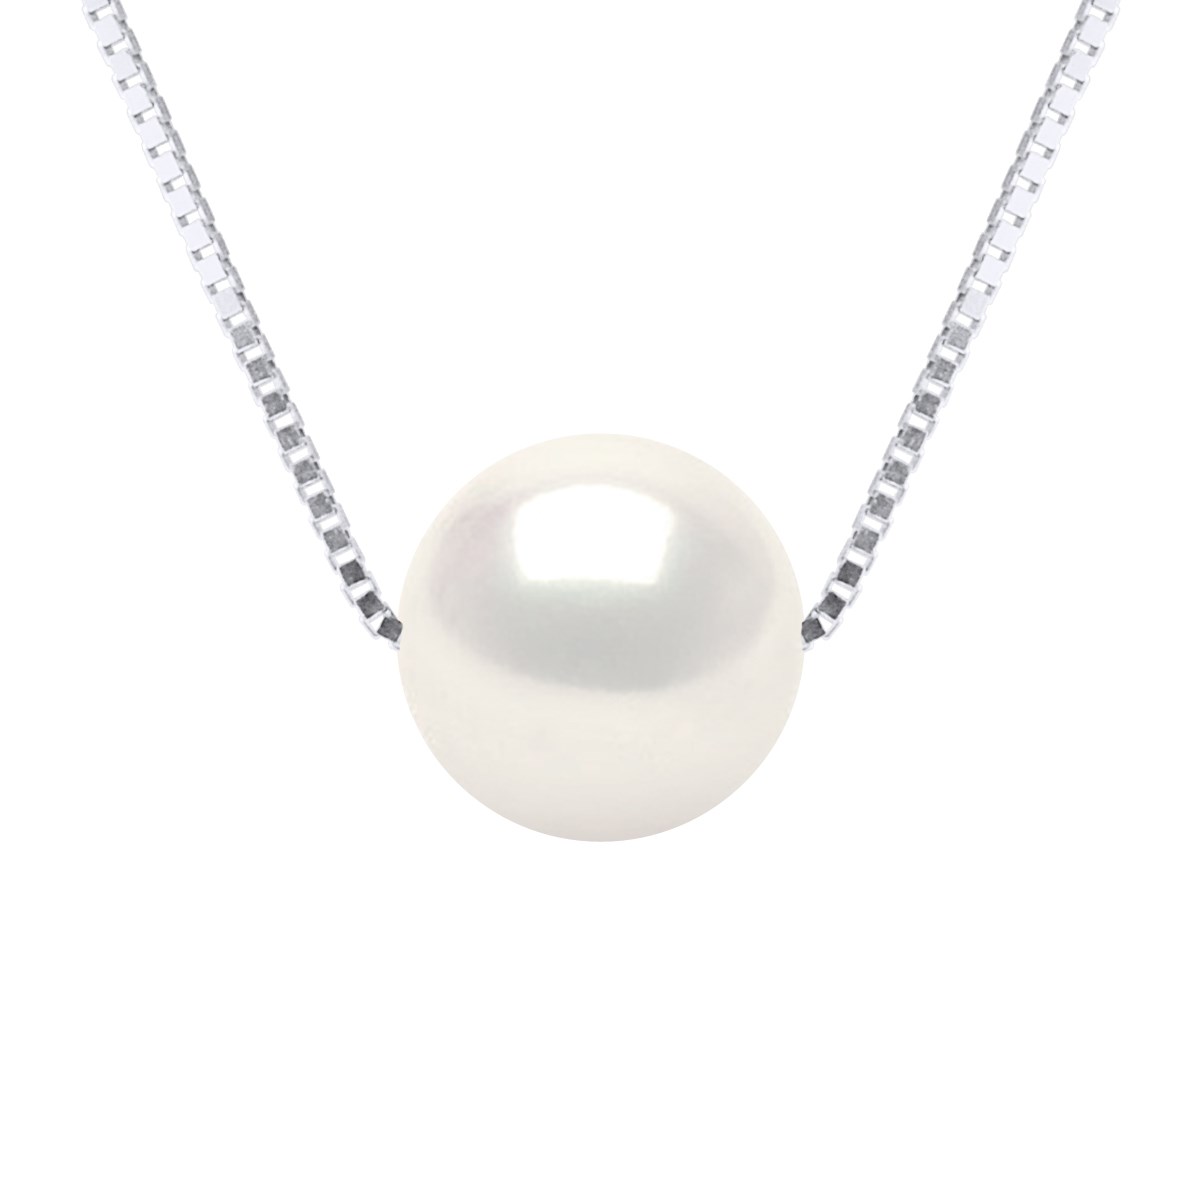 Collier Perle de Culture d'Eau Douce Ronde et Blanche 9-10 mm Chaîne Vénitienne Or Blanc